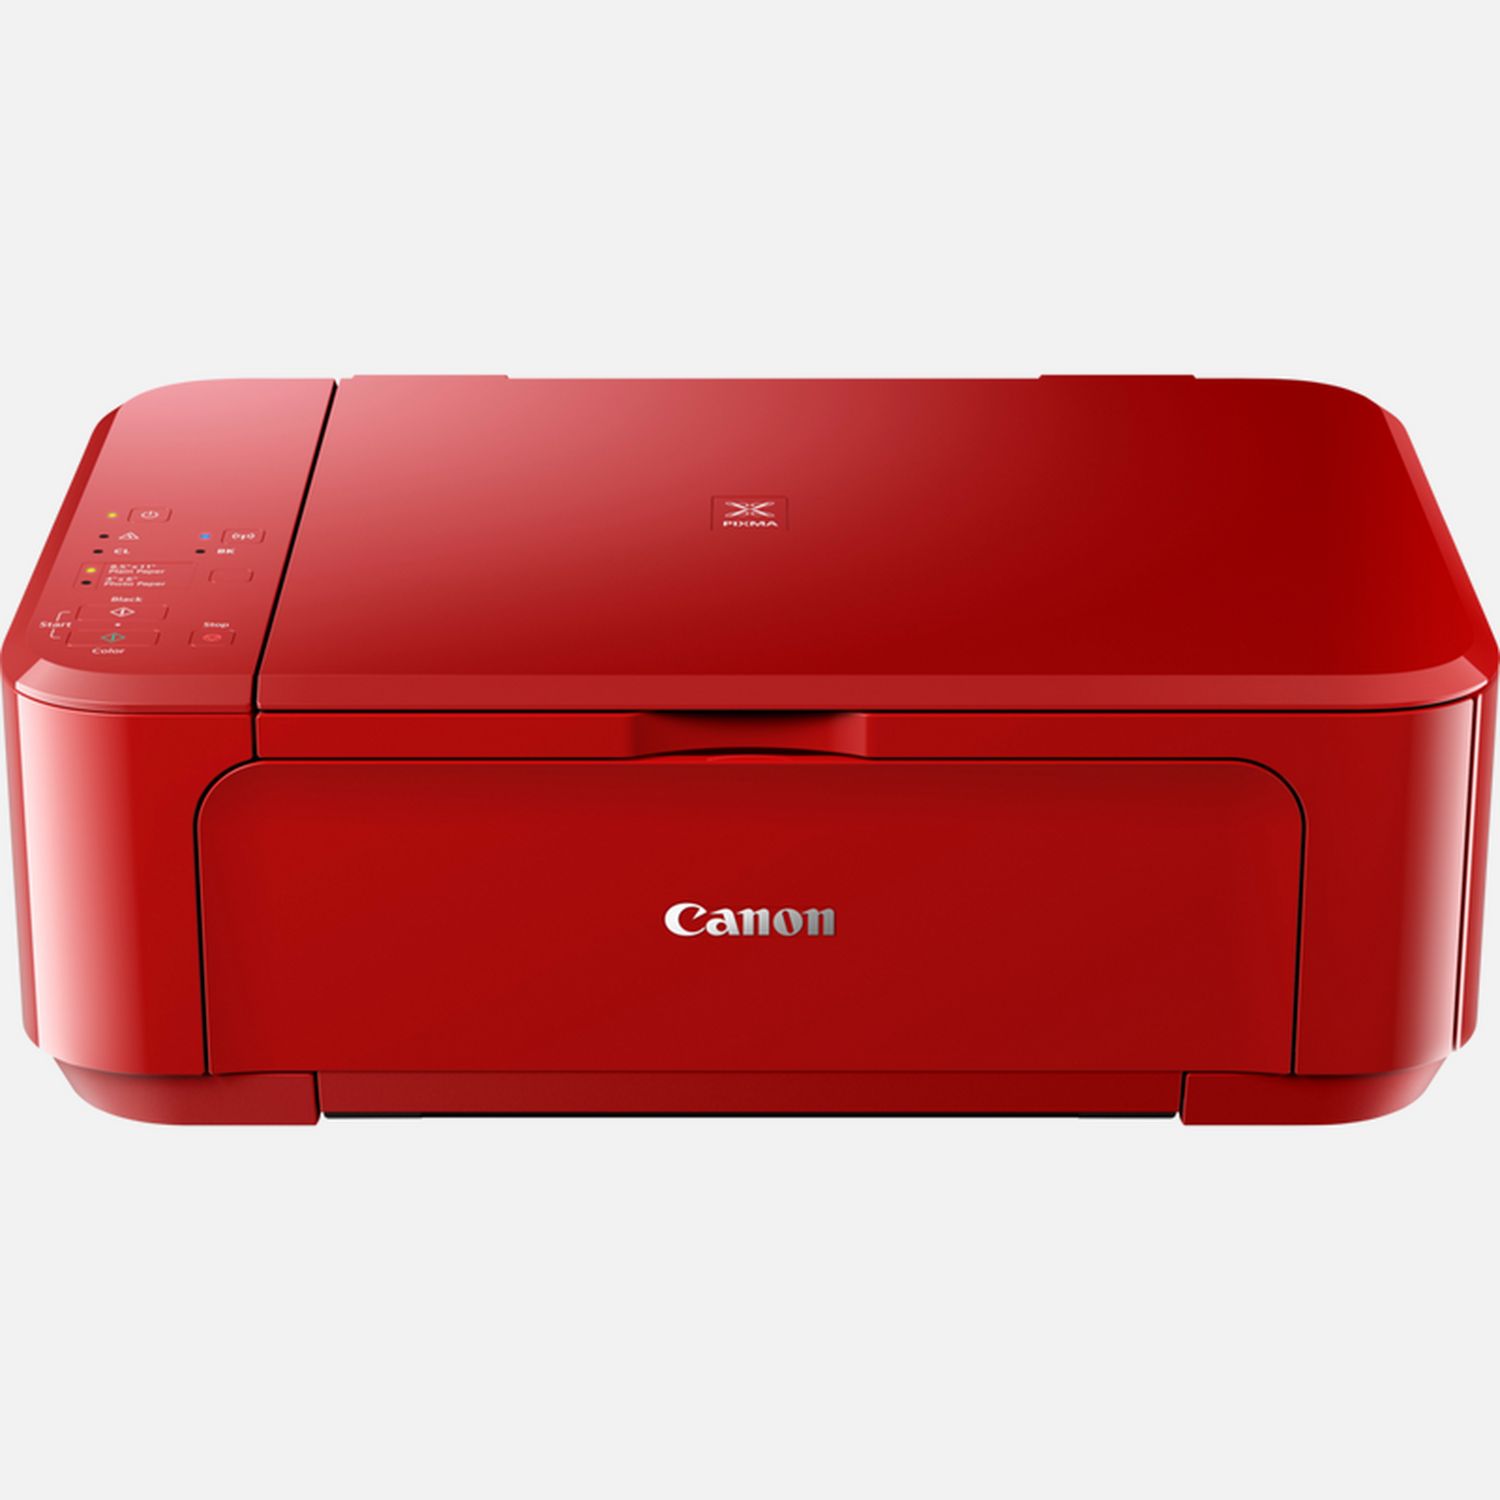 Buy Canon PIXMA MG3650S All-In-One inkjet printer, Red — Canon Danmark